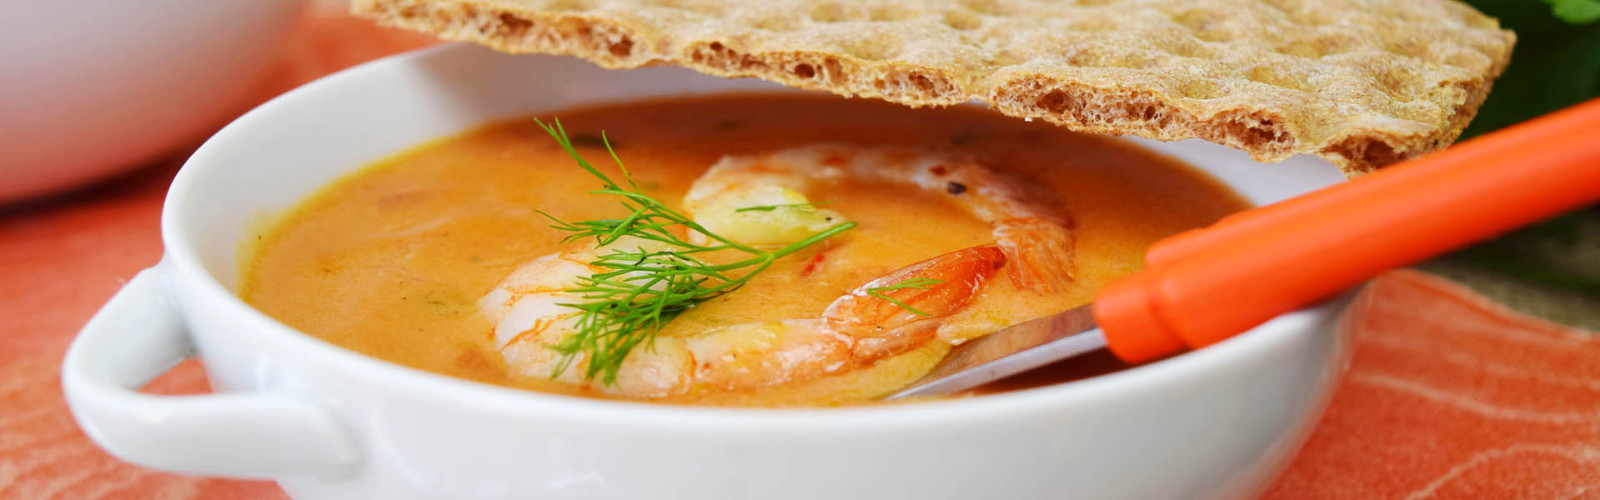 Суп харчо в казане - рецепт с фото на Пошагово ру